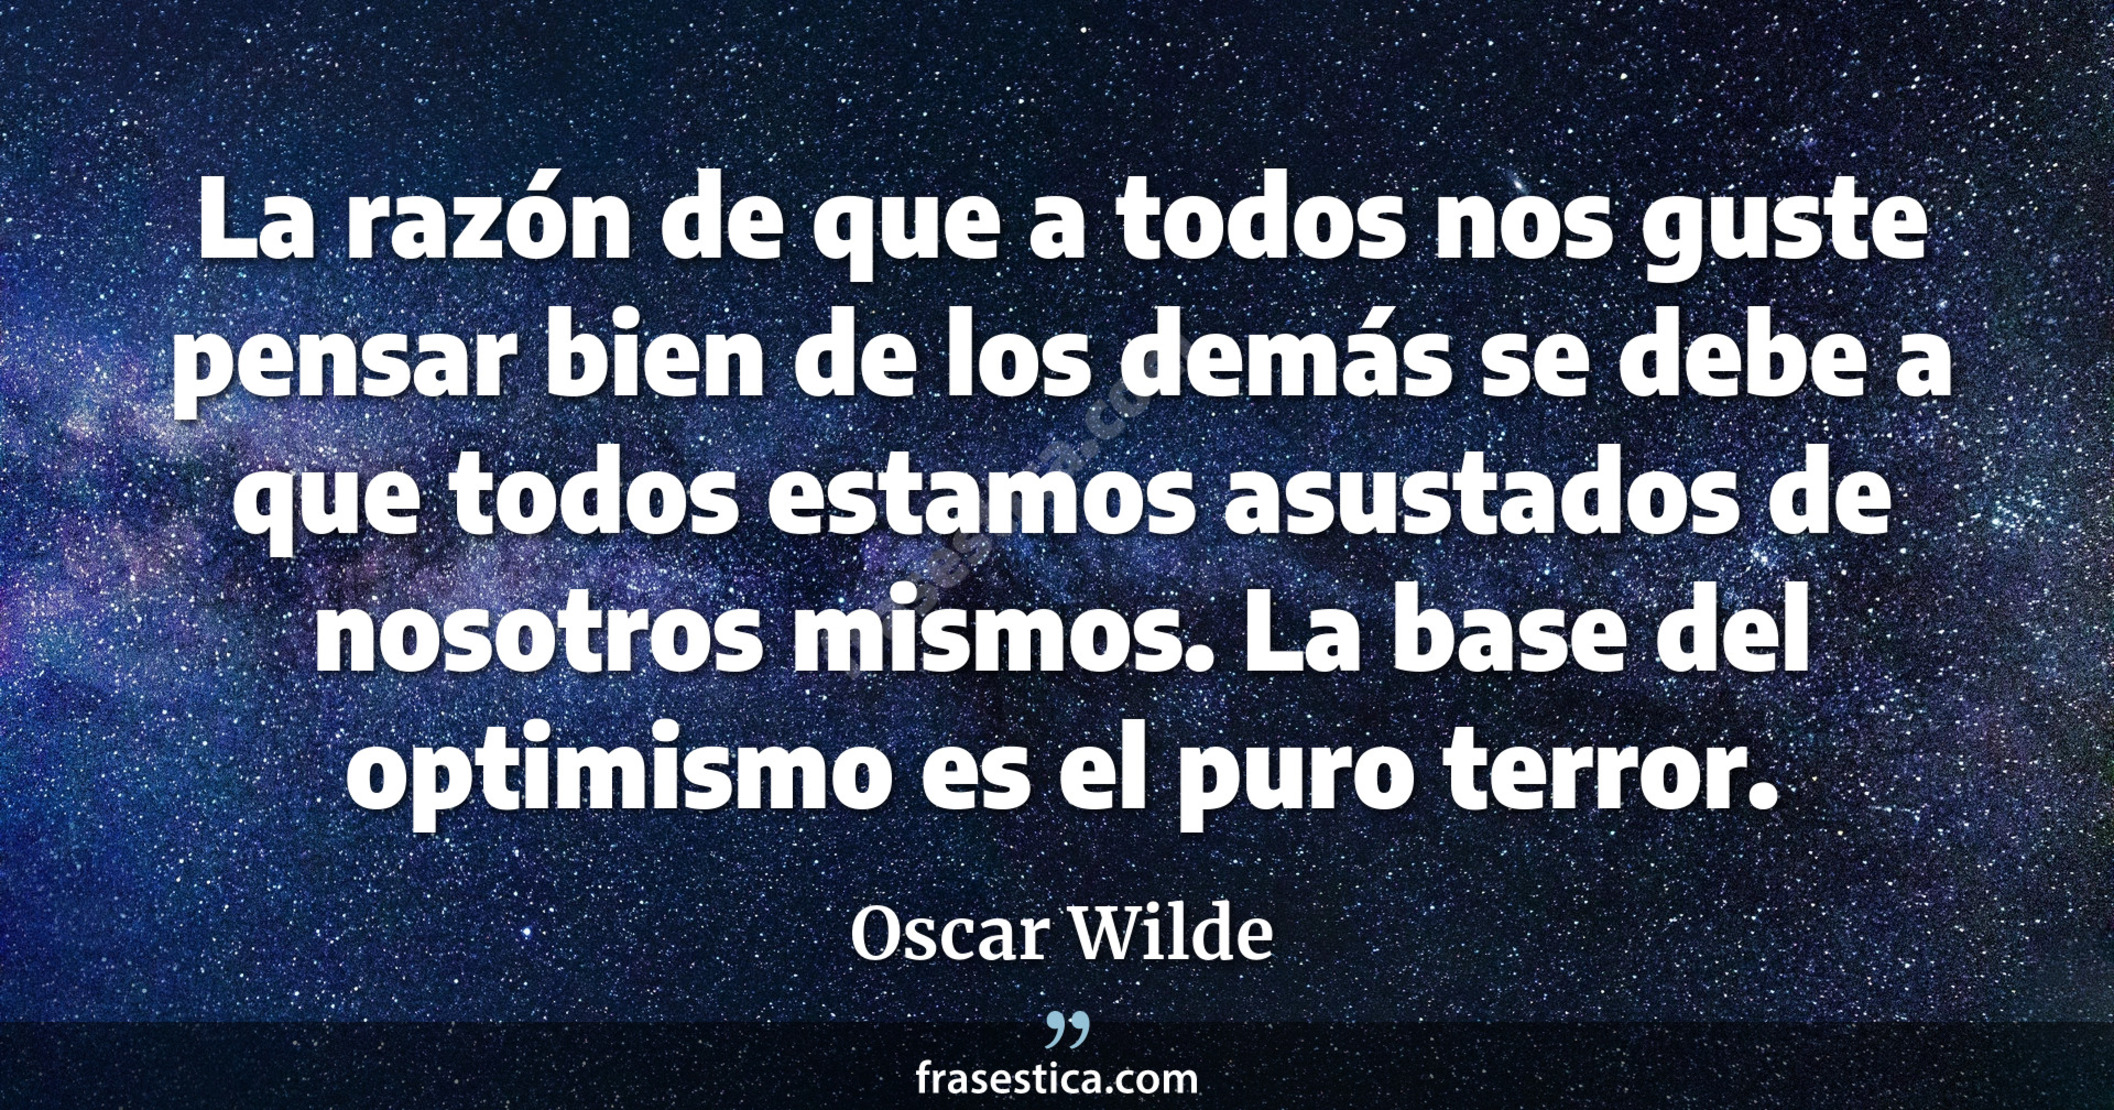 La razón de que a todos nos guste pensar bien de los demás se debe a que todos estamos asustados de nosotros mismos. La base del optimismo es el puro terror.  - Oscar Wilde